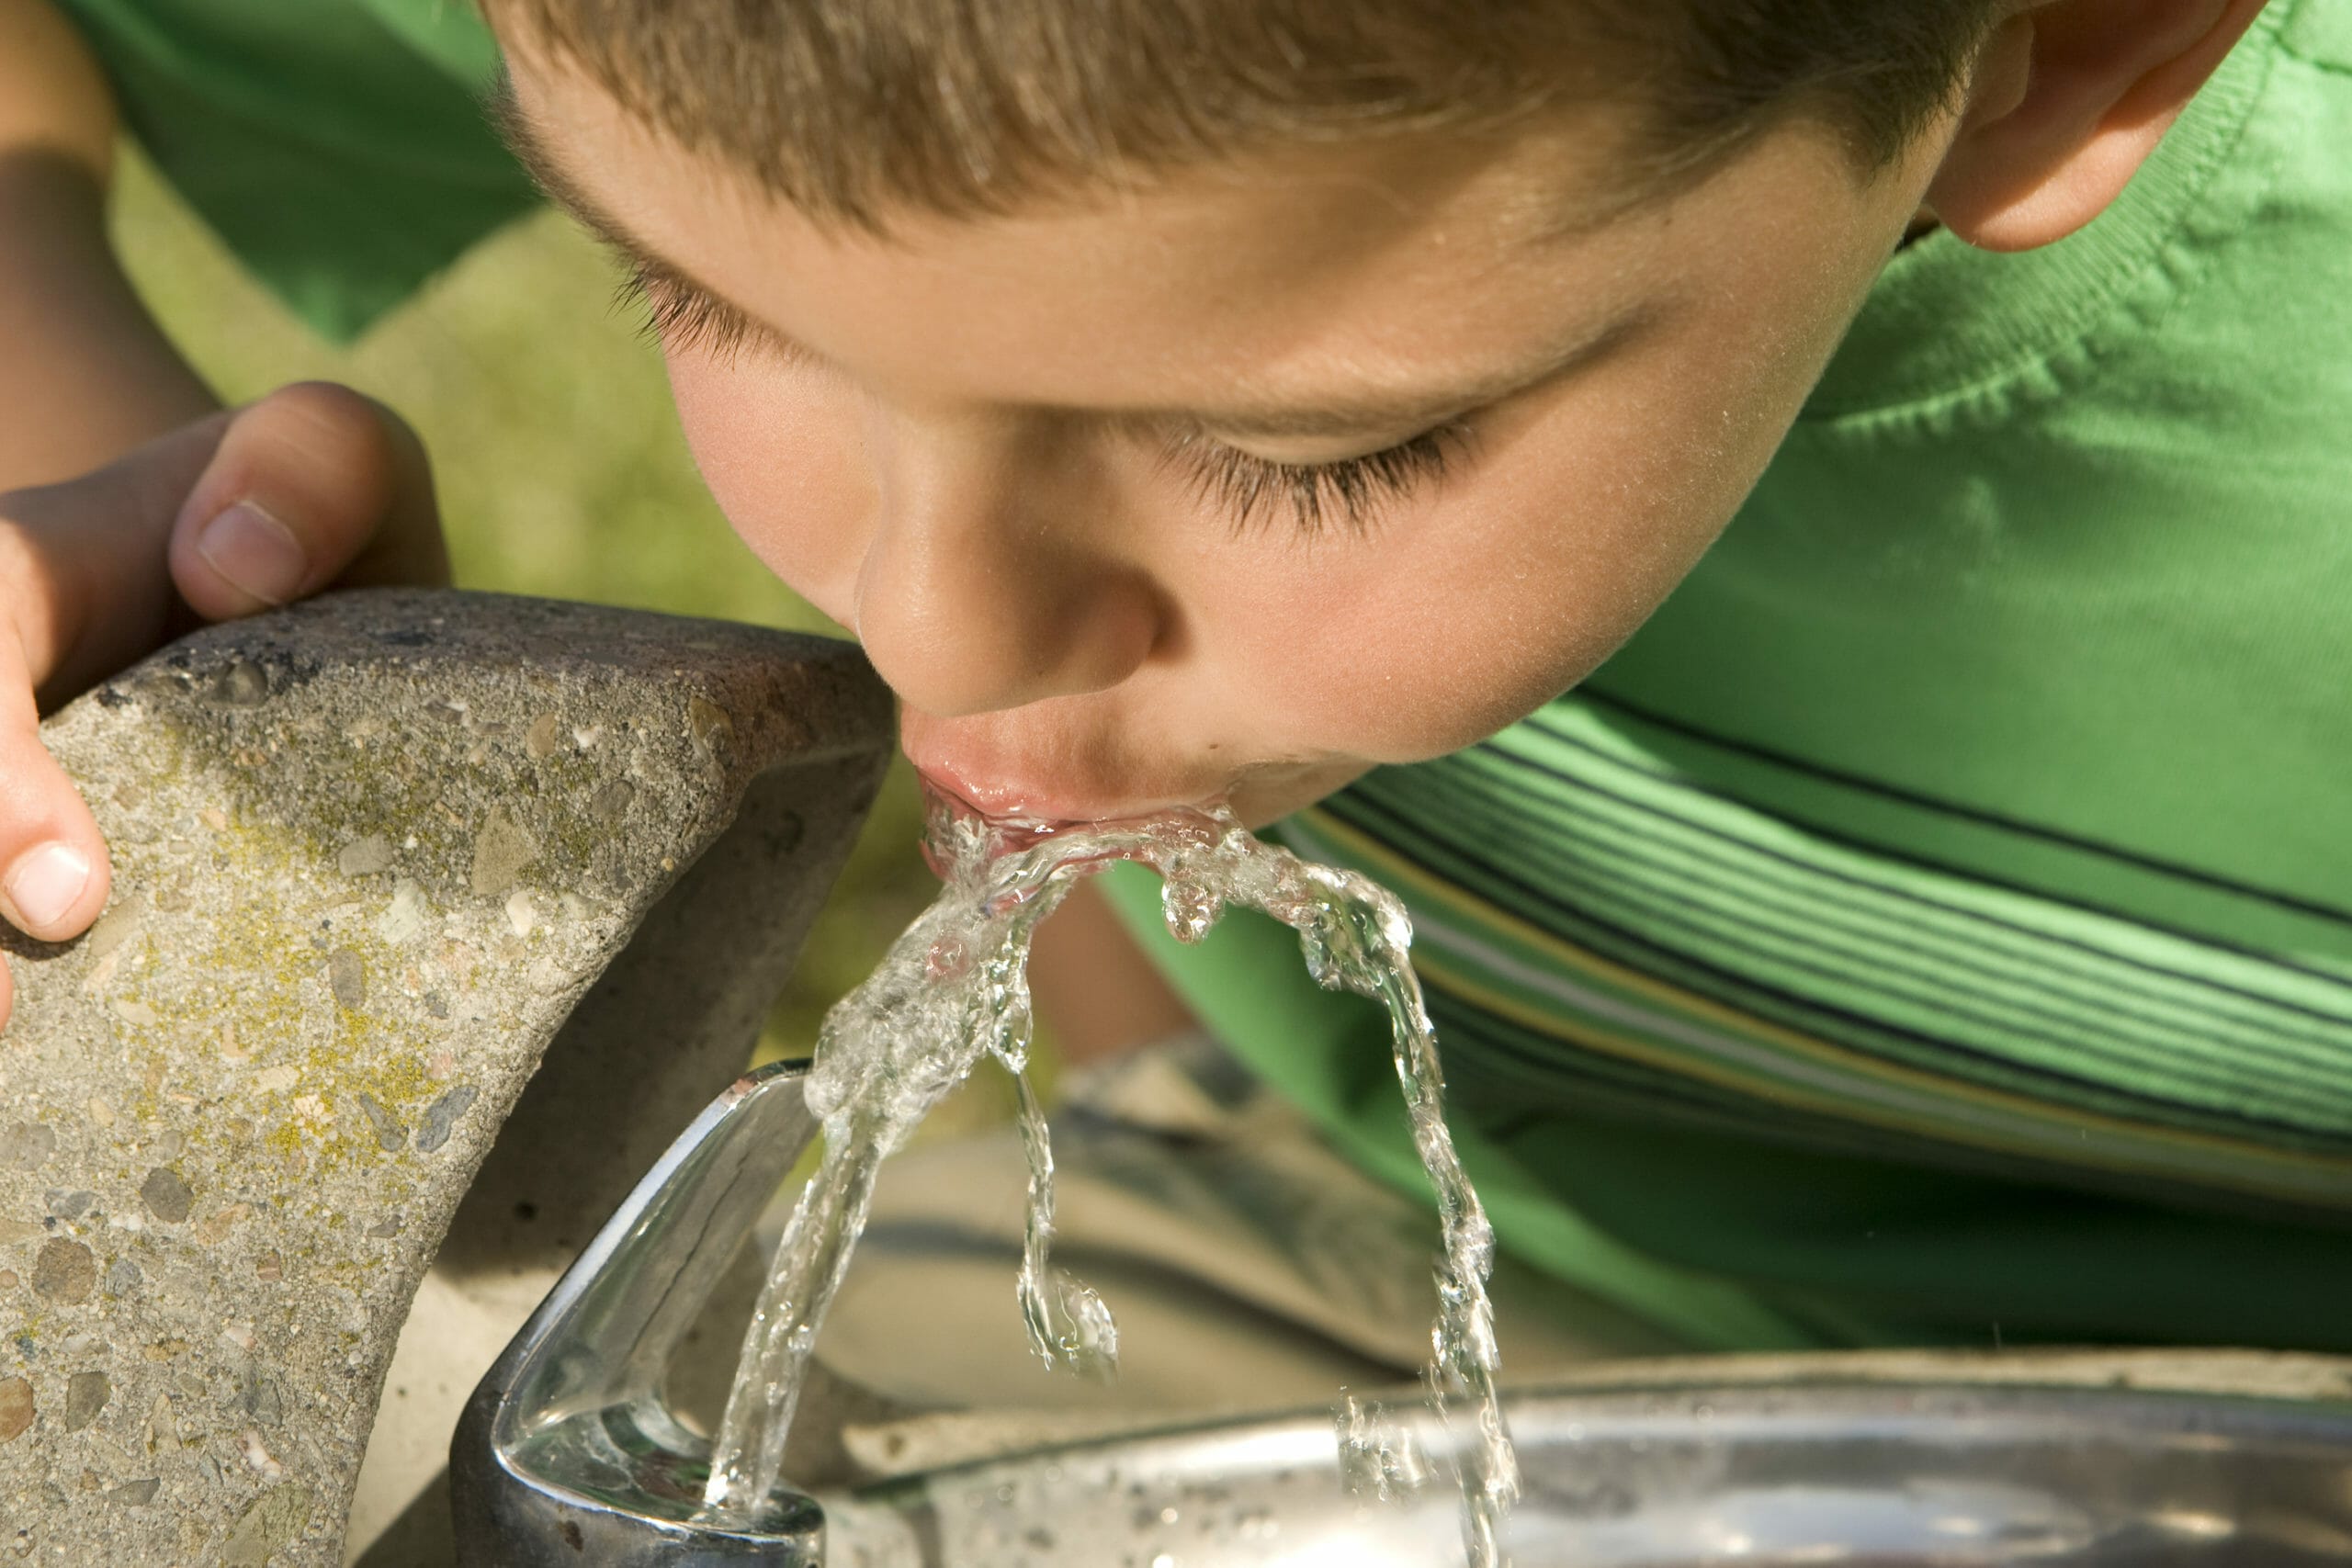 Употребление загрязненной воды. Питье грязной воды. Фонтанчик для питья дети. Человек пьет воду. Ребенок пьет воду.